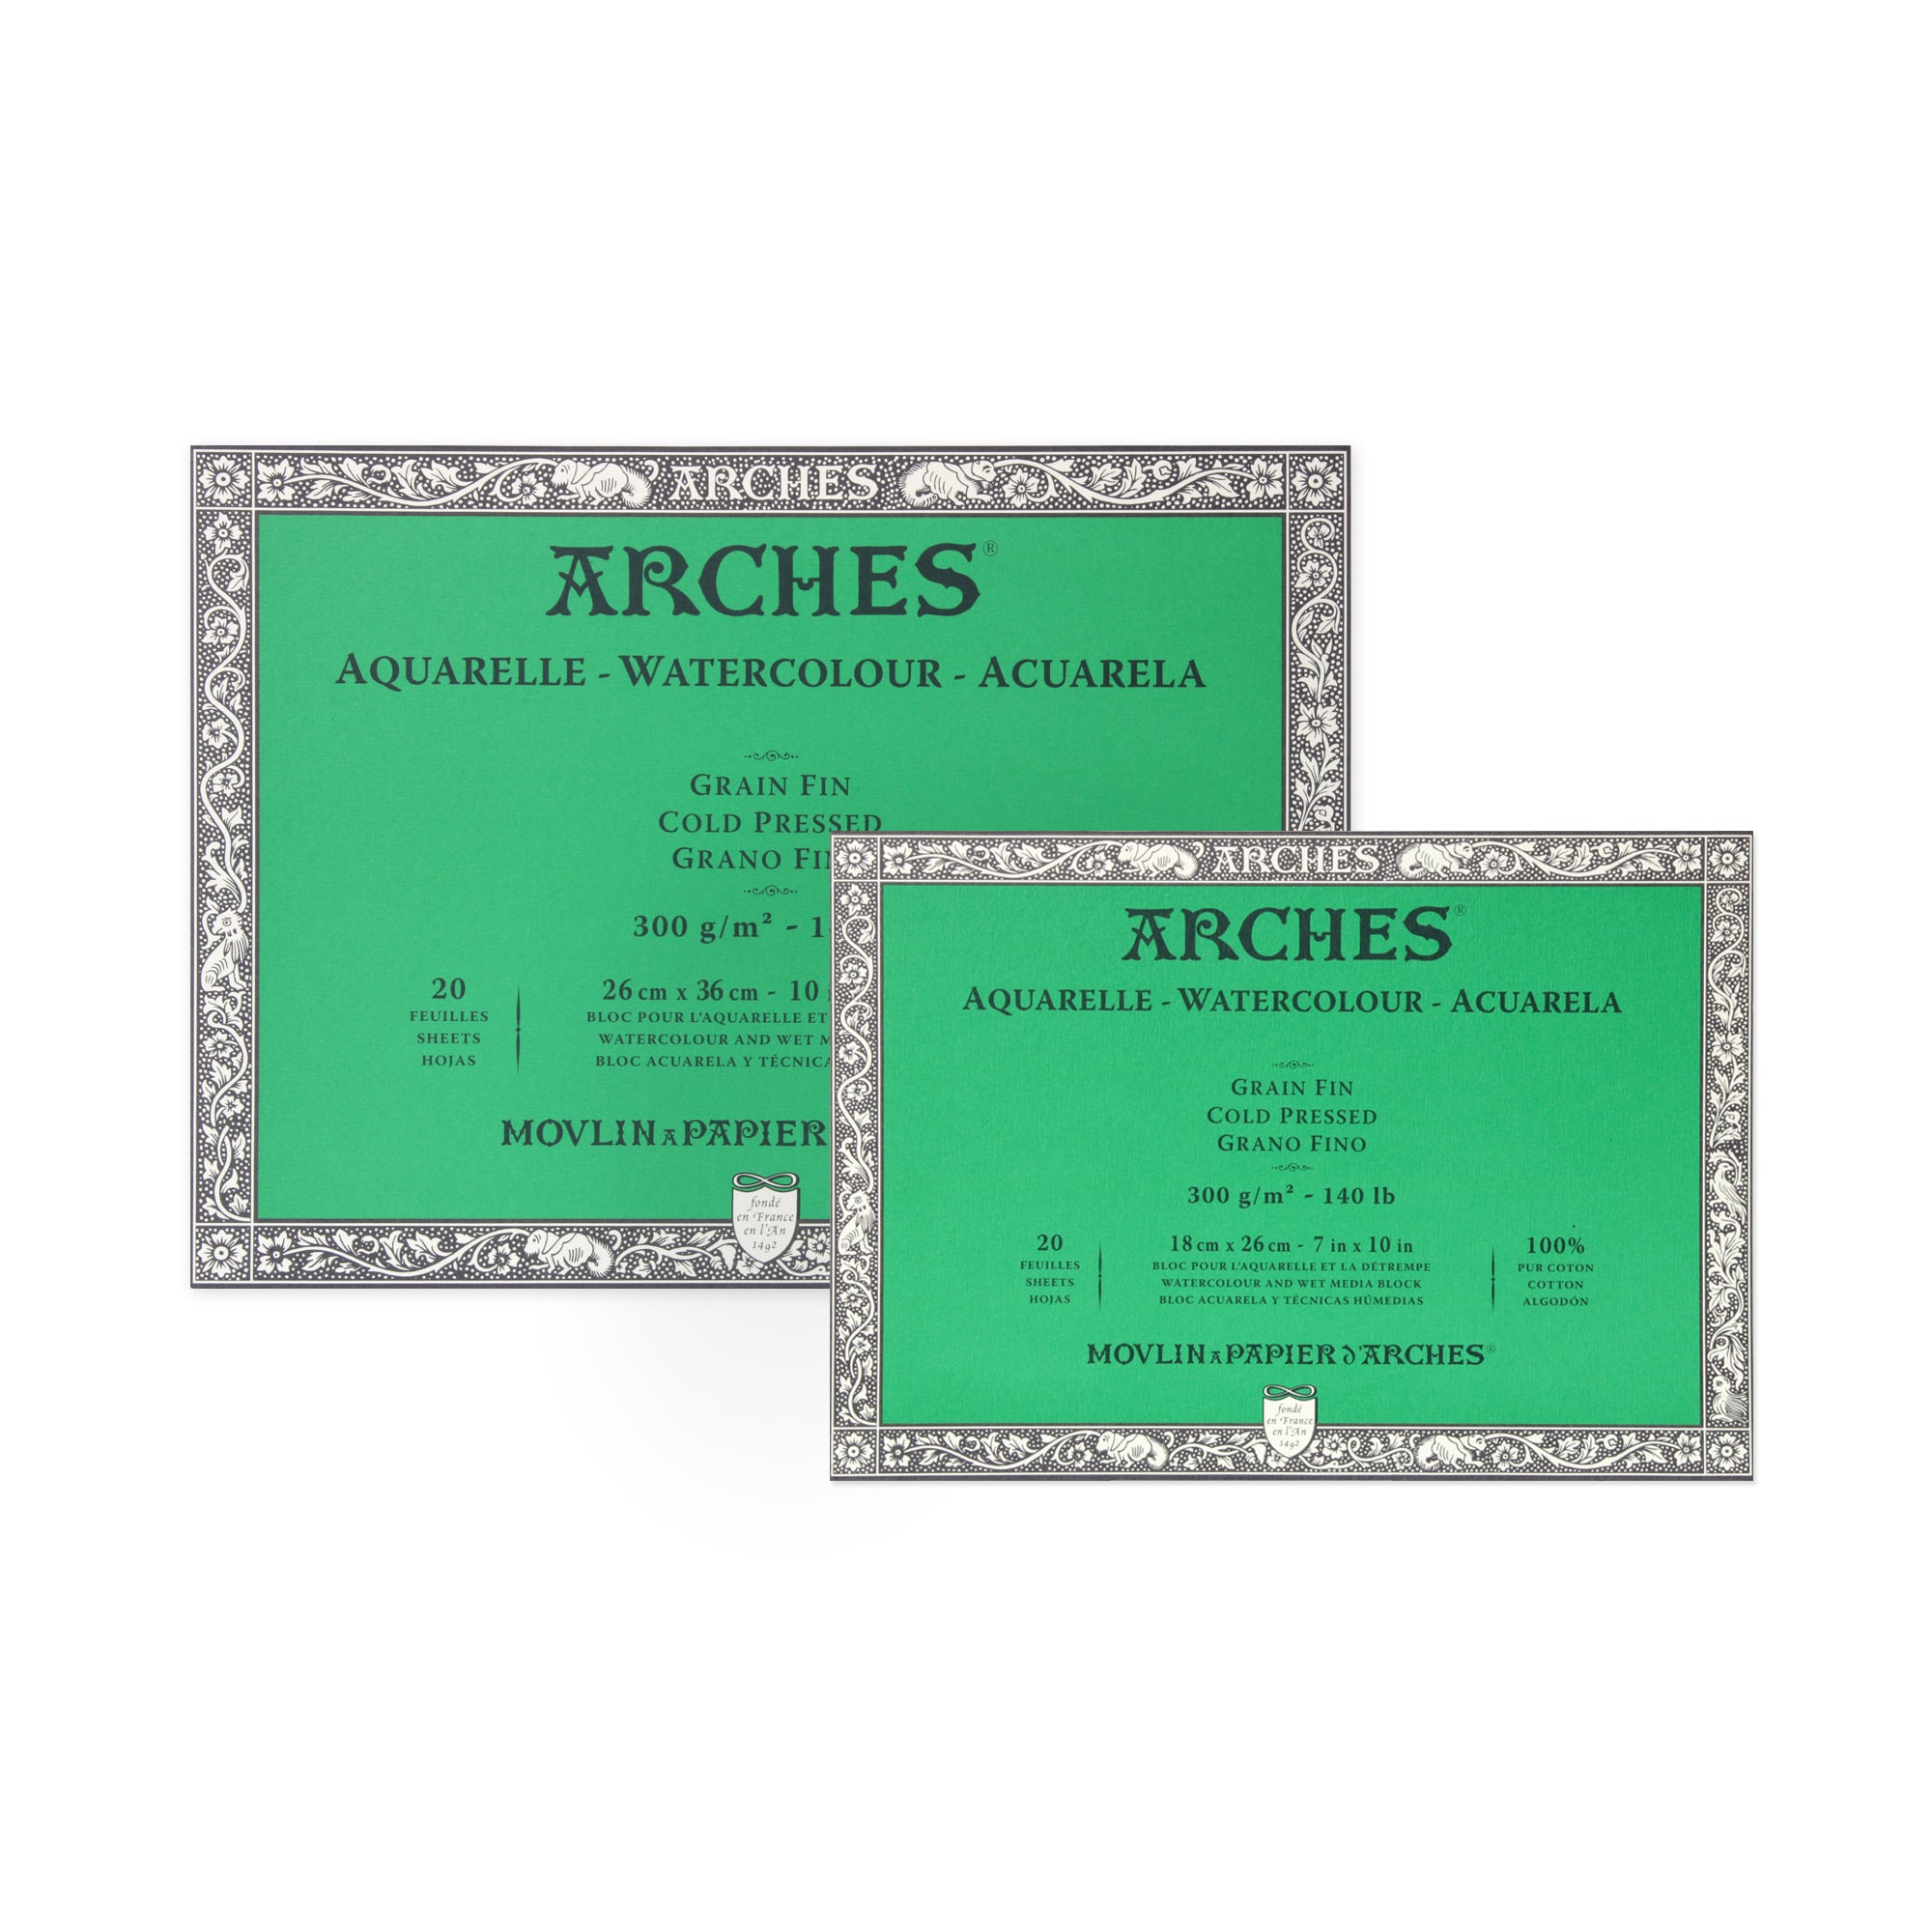 Bloc de papier aquarelle Arches 140lb/300gr 12 x 16 grain fin (cold  pressed) 20f. par